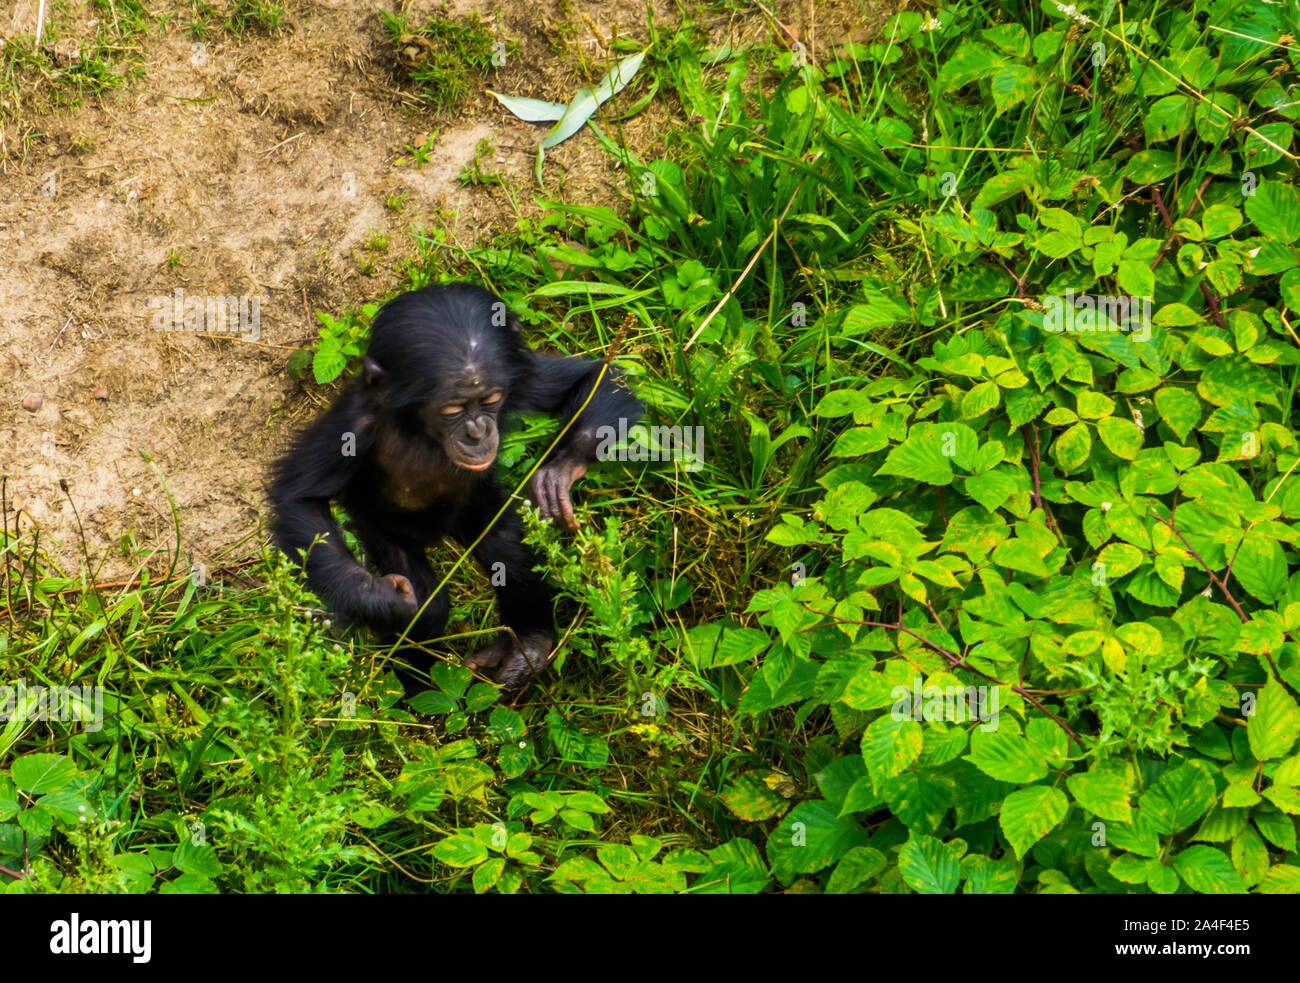 Bébé bonobo s'appuyant sur une partie des plantes, les droits de l'ape, chimpanzé pygmée enfant, endangered primate espèce d'Afrique Banque D'Images